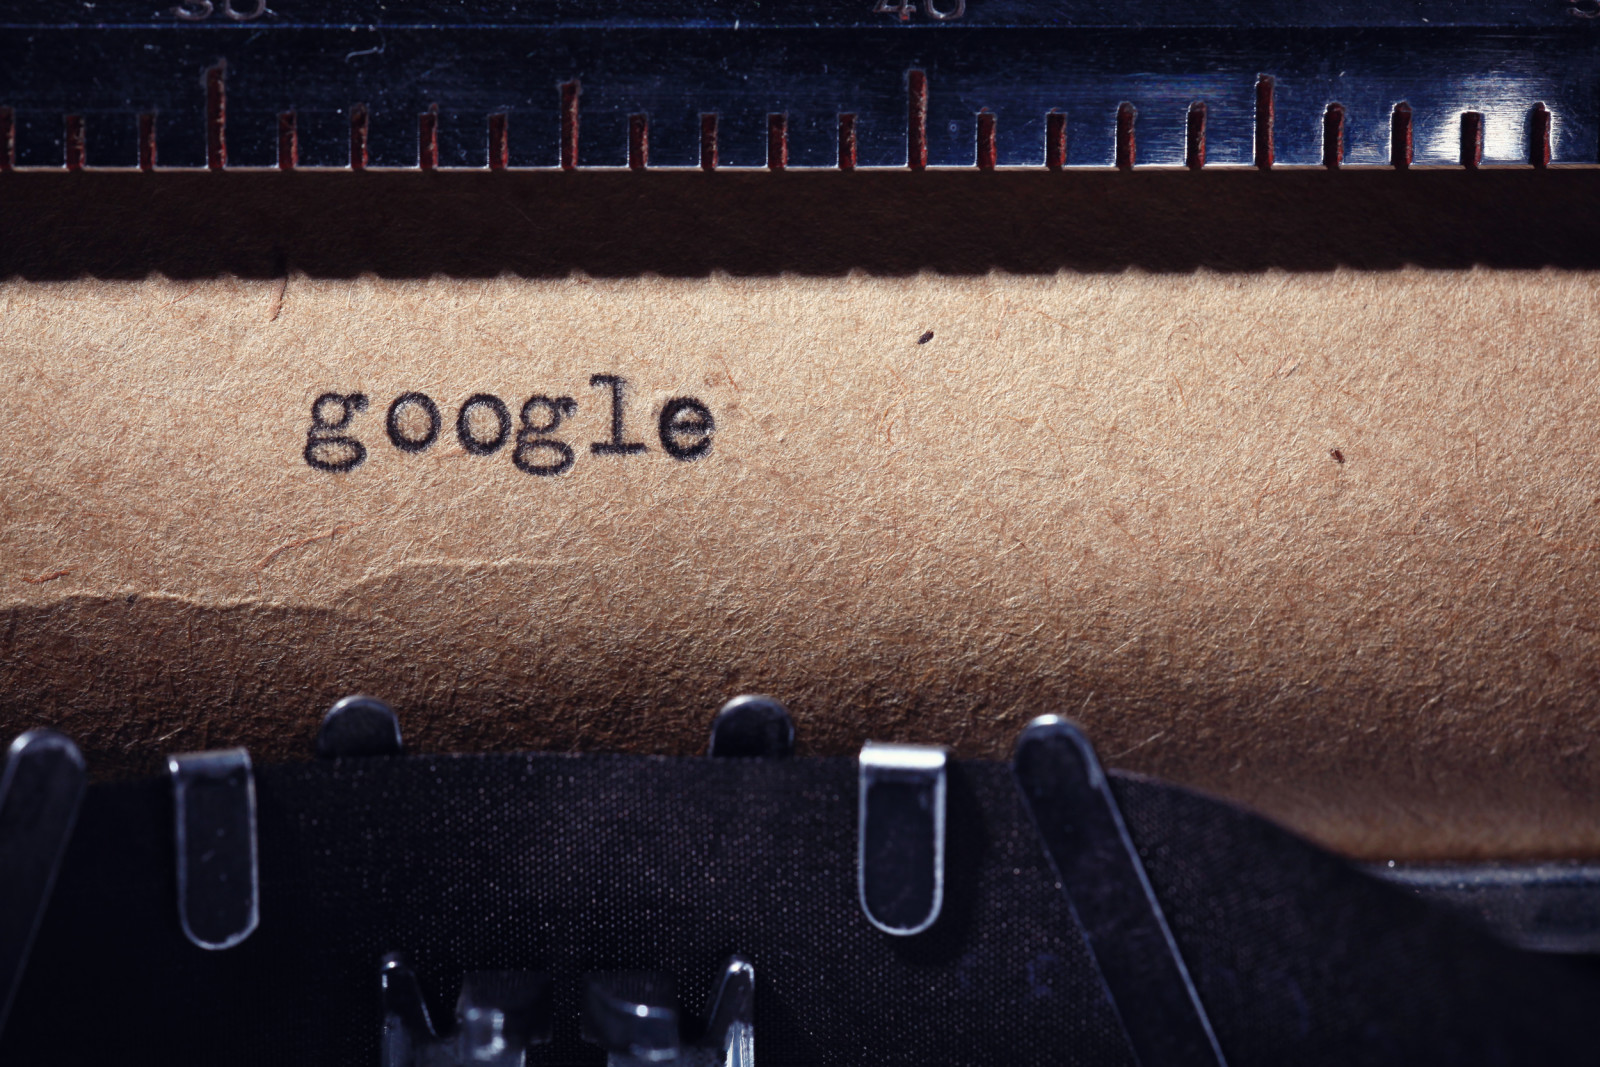 giấy, máy đánh chữ, mực, Google